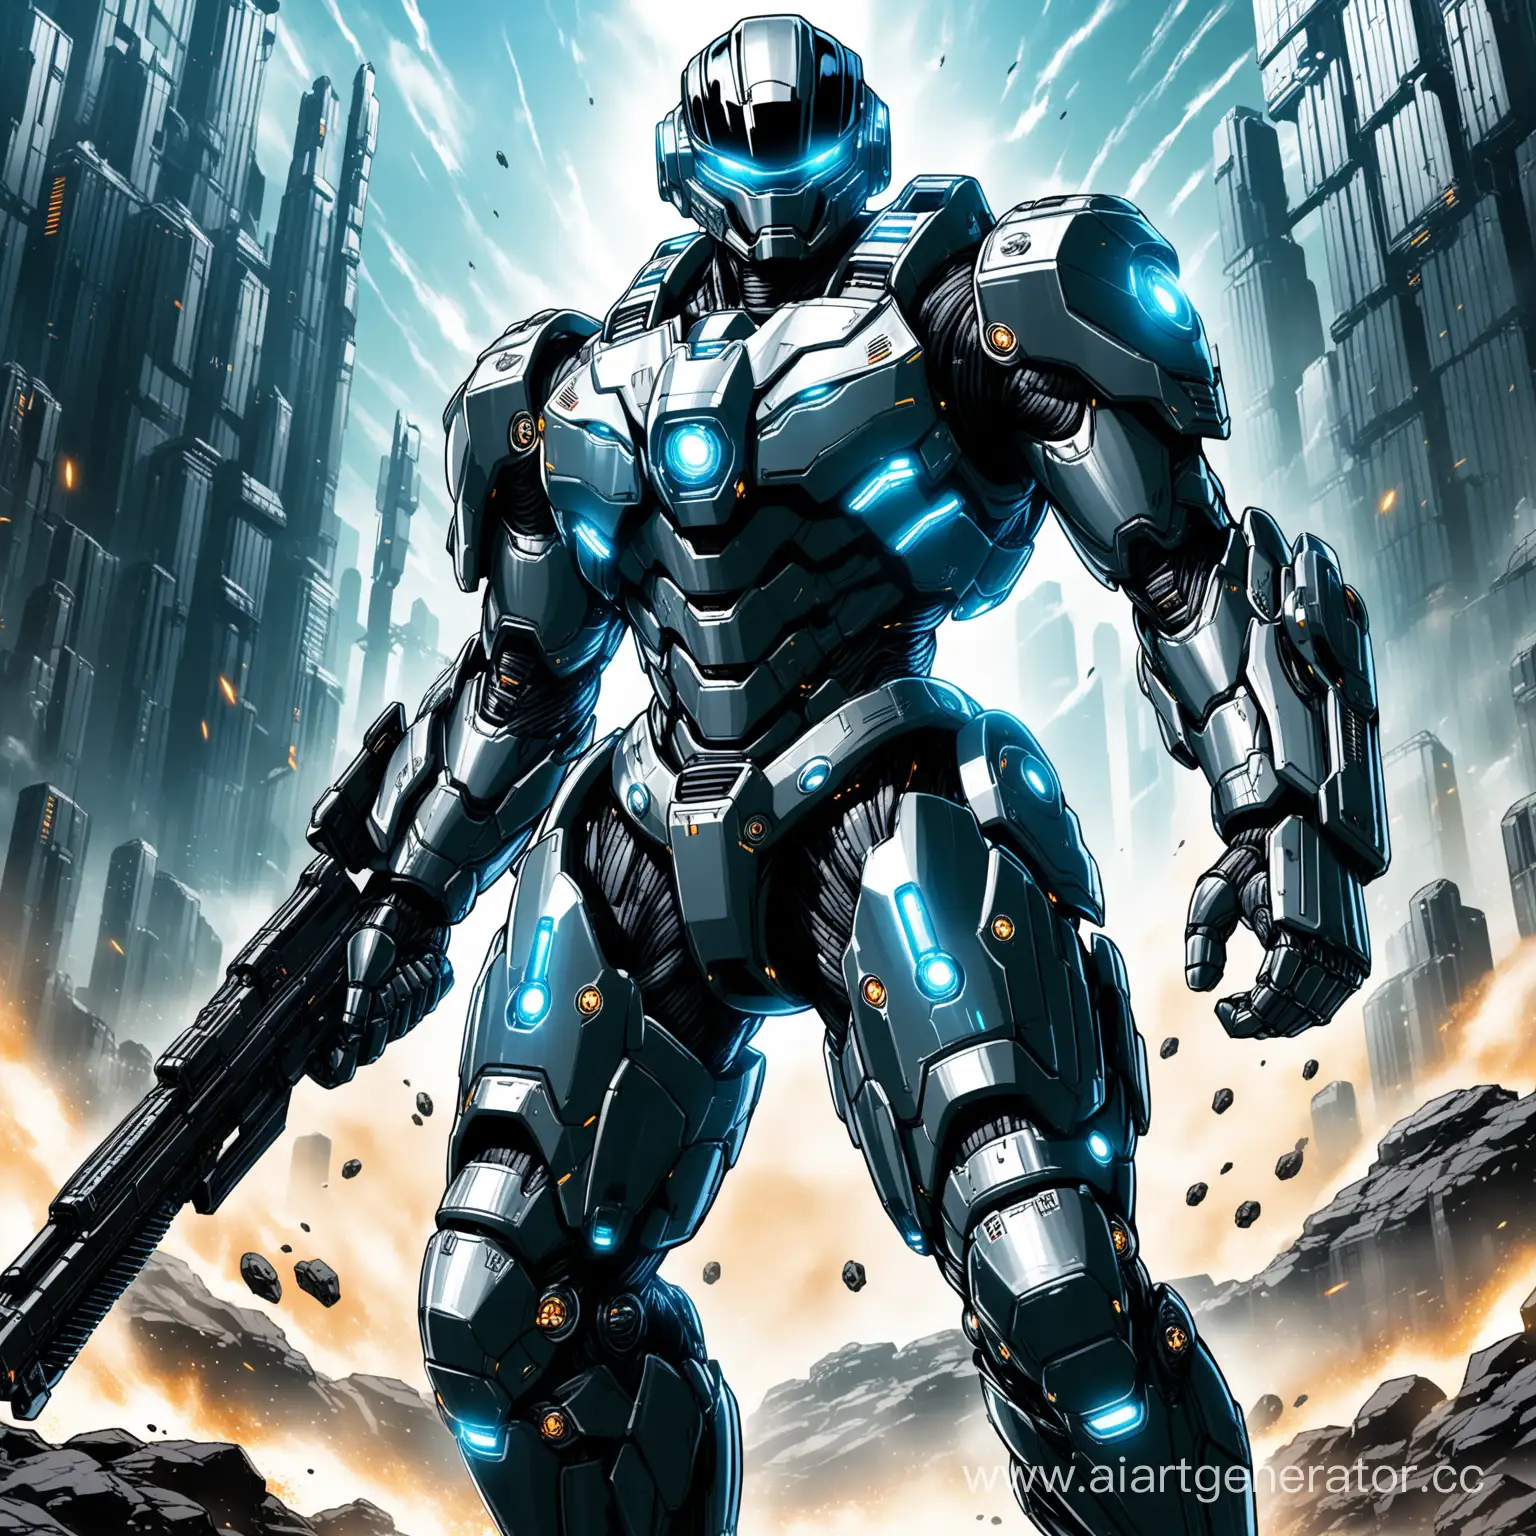 В эпической позе в бою, Высокотехнологичный, брутальный, мощный, имеющий дополнительную усиленную броню Robocop 3000 в стиле F.H.A.T.C.A.L. WARRIORS, оснащен самыми передавшими технологиями во вселенной далекого будущего,